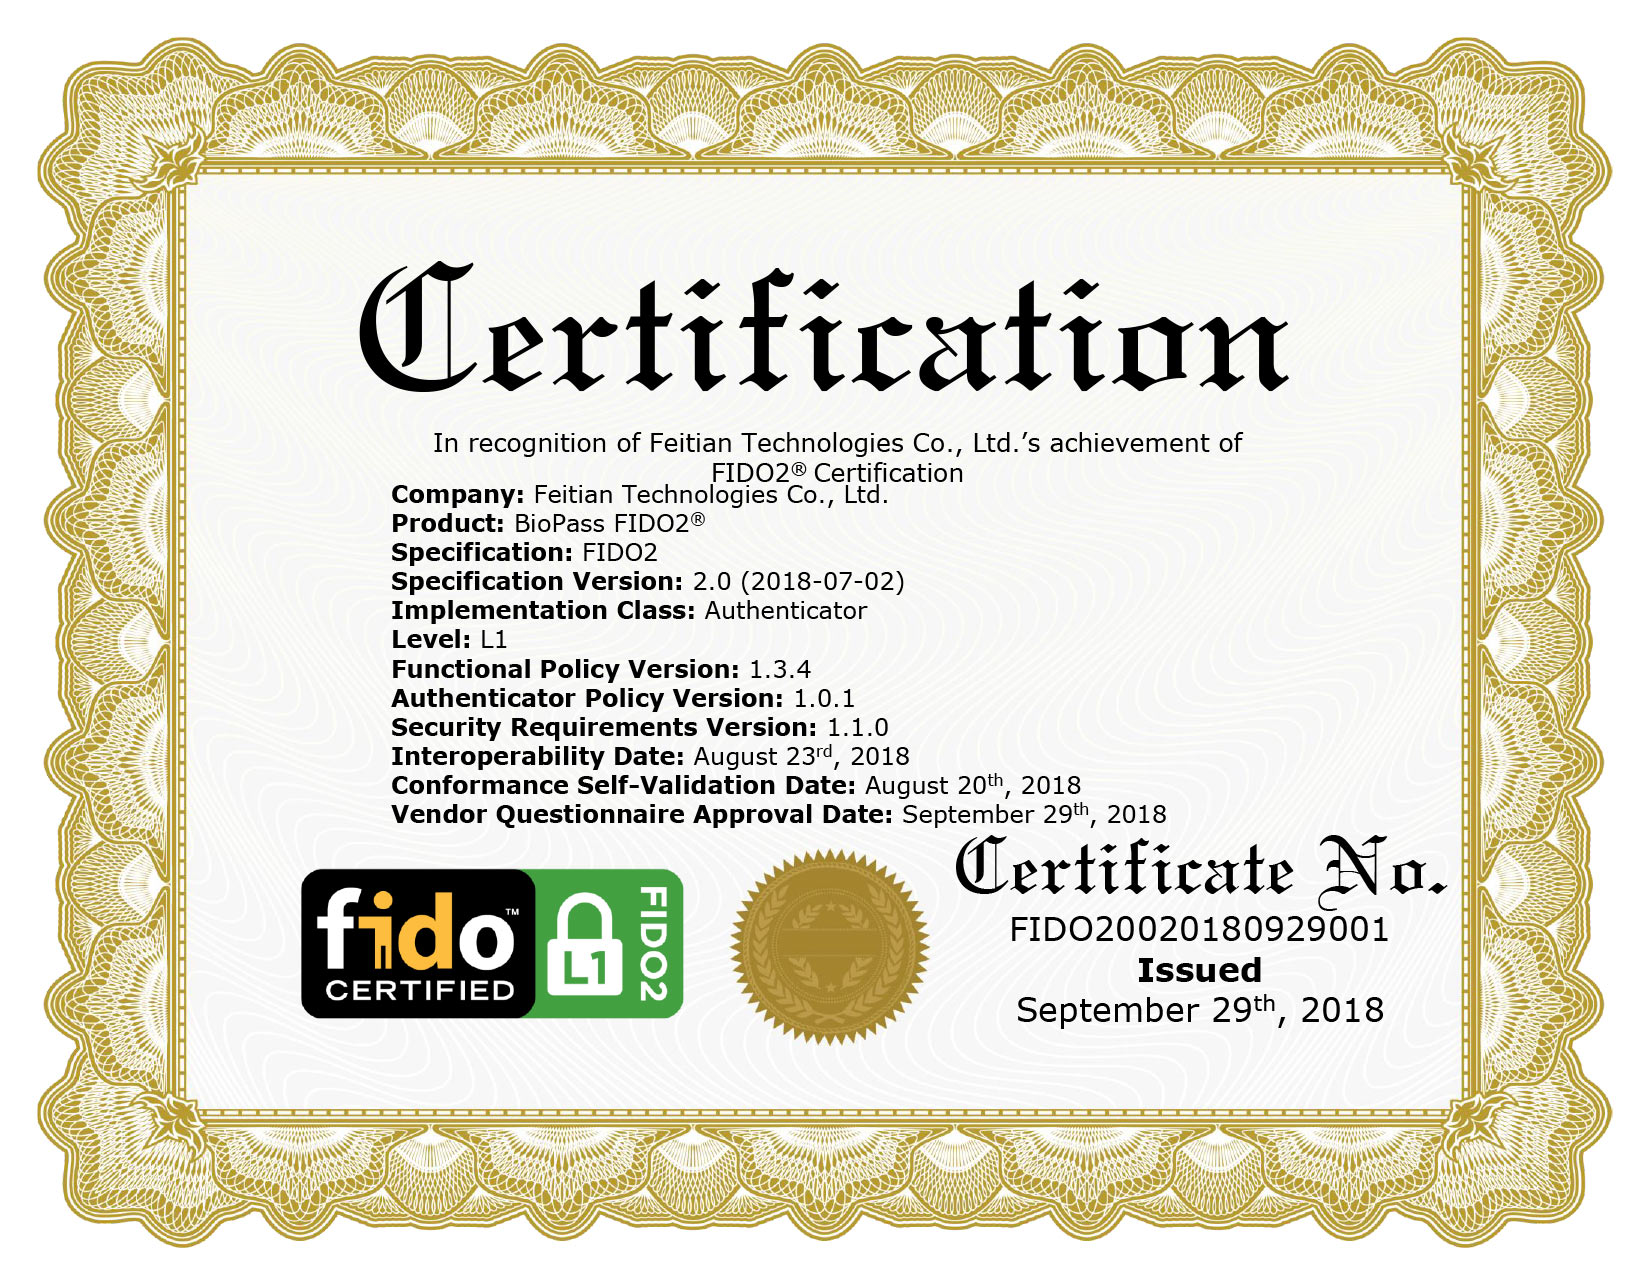 FIDO2 Certification